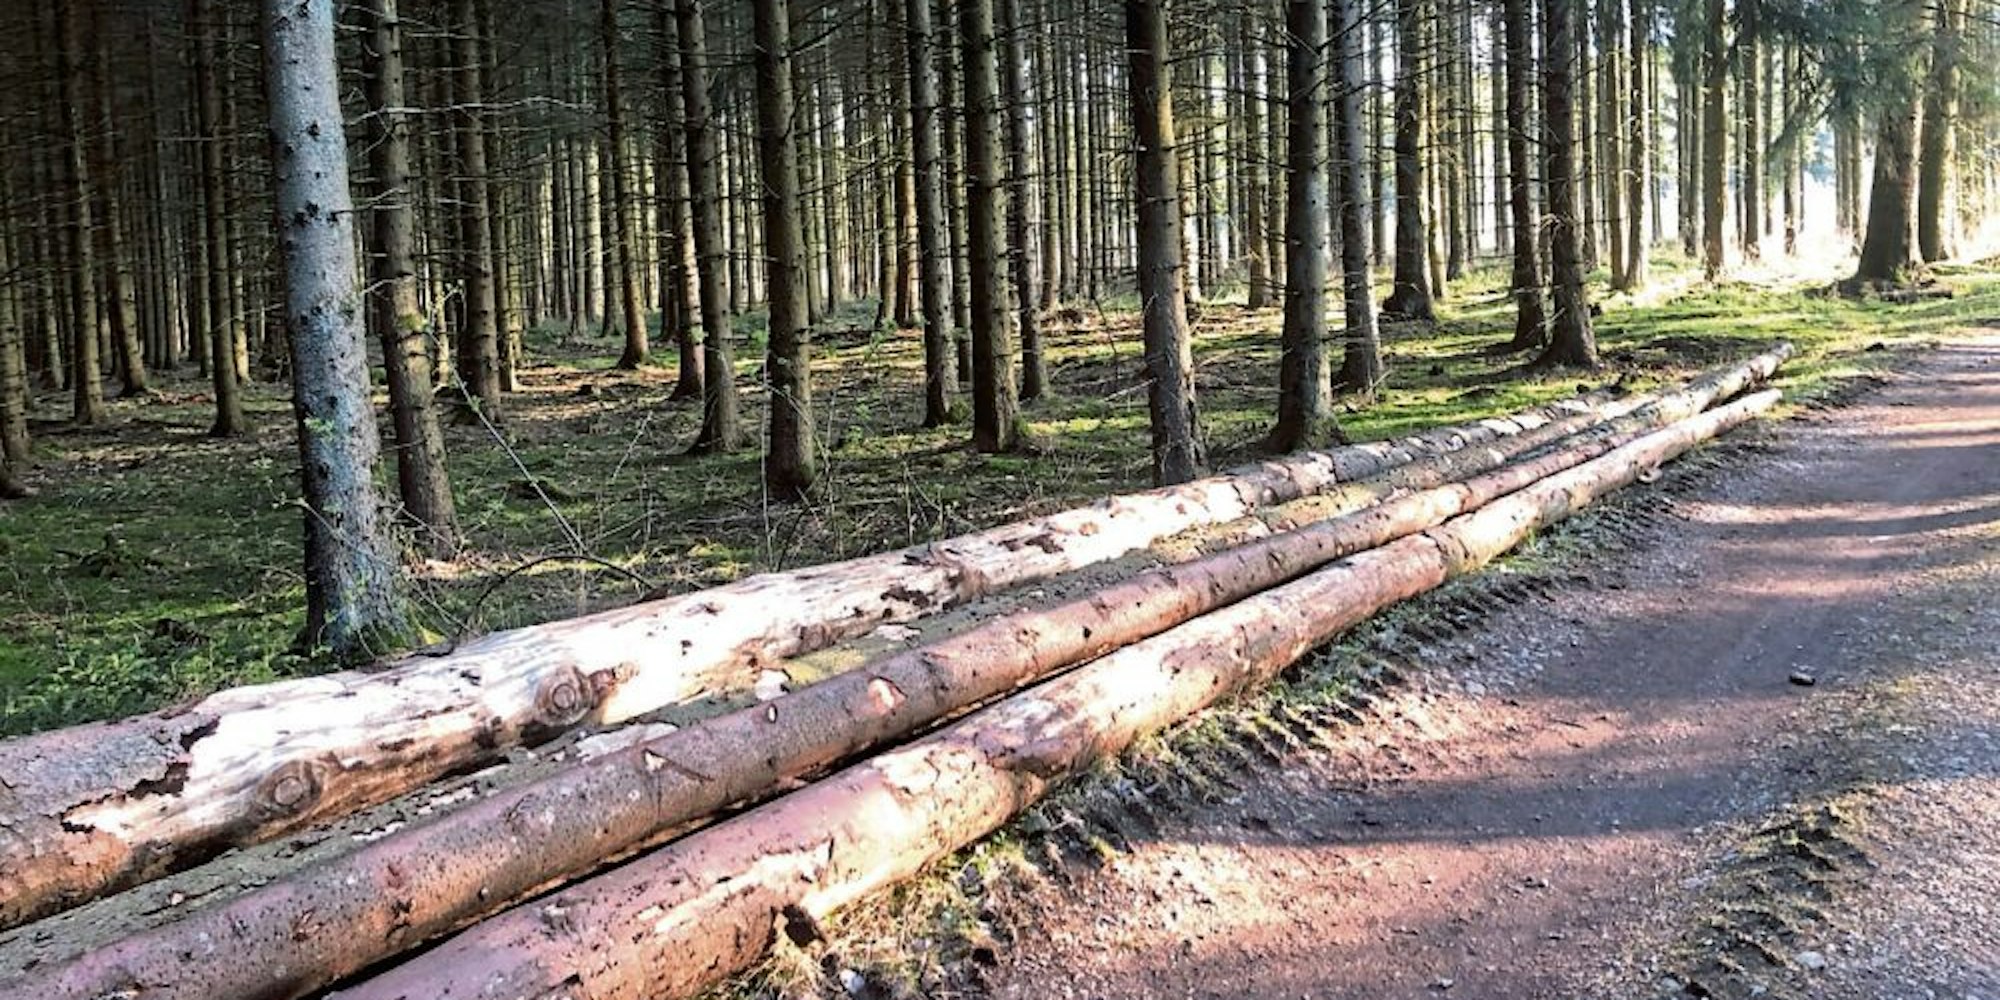 Käferholz liegt am Waldweg zum Abtransport bereit. Glücklicherweise sind die Borkenkäfer in diesem Jahr noch nicht aktiv.